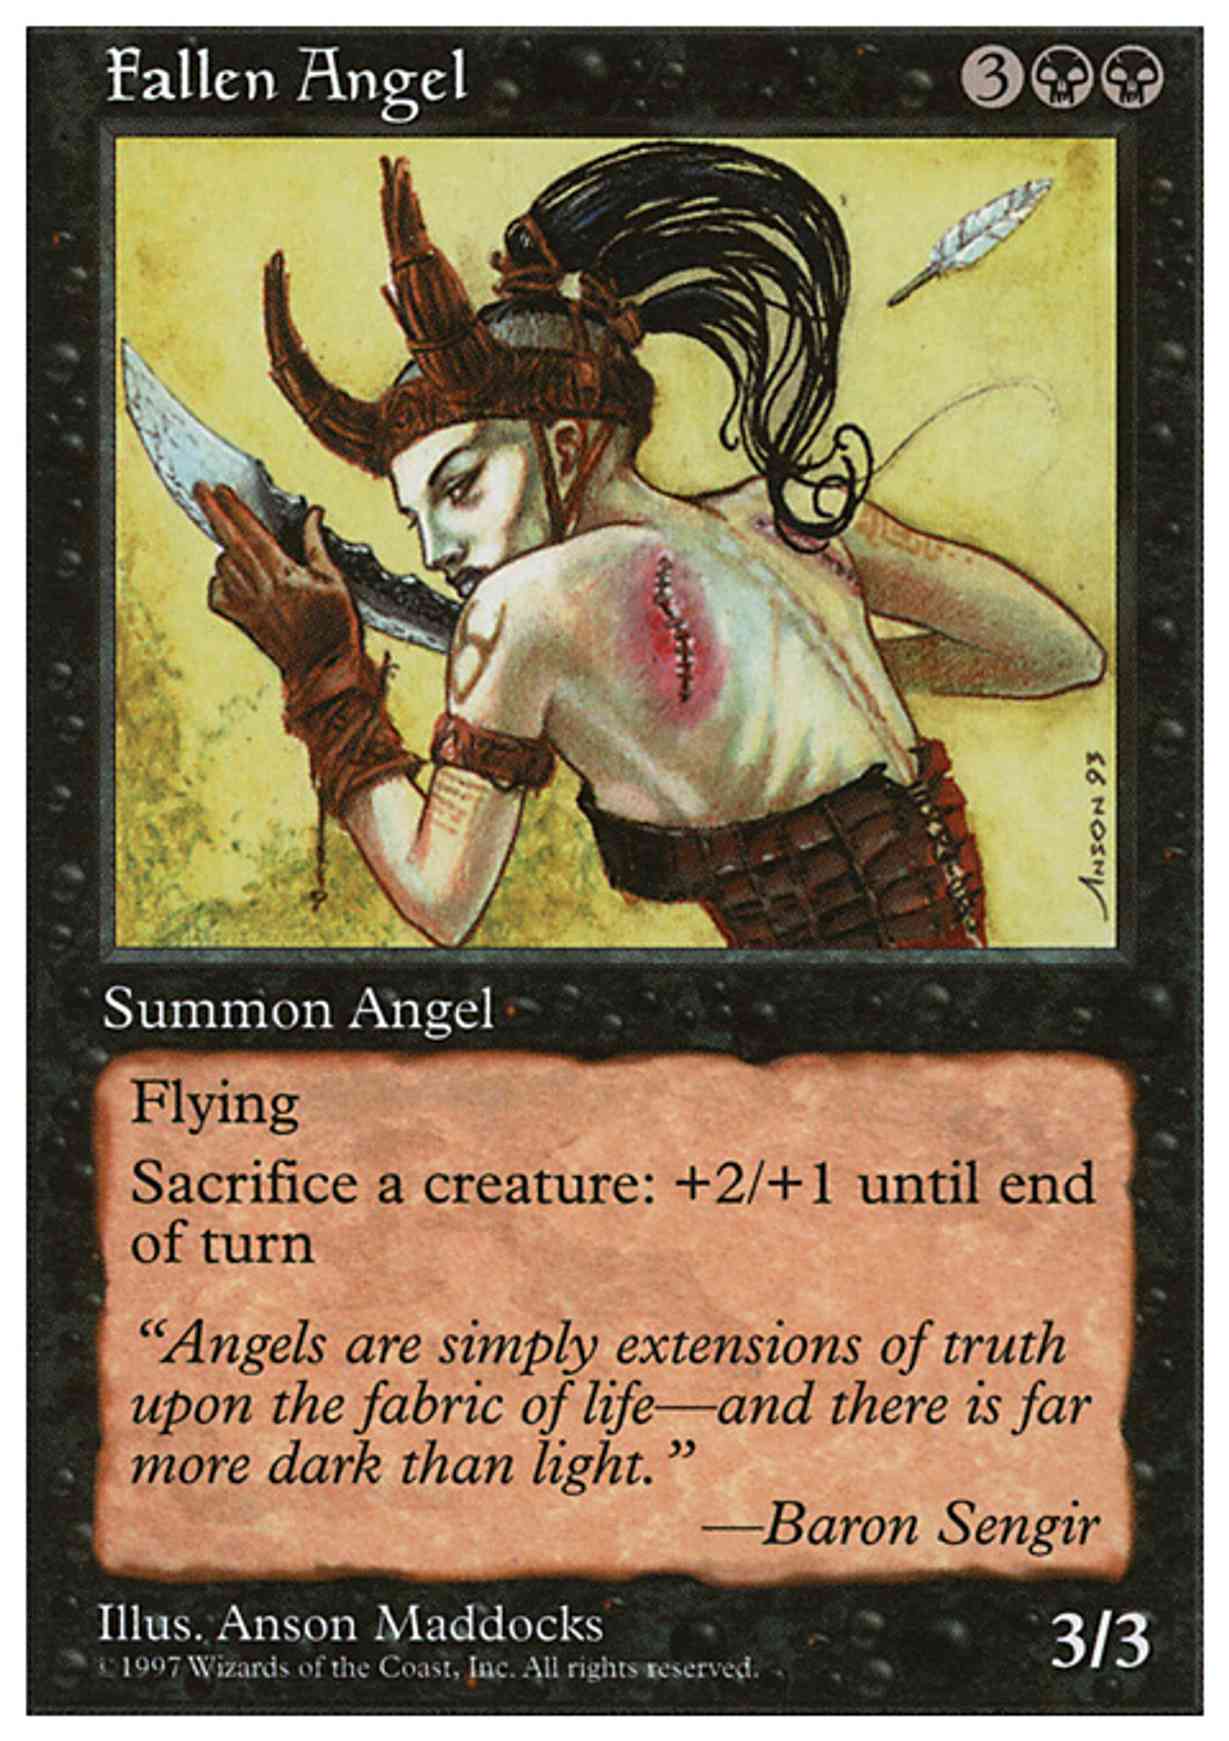 Fallen Angel magic card front